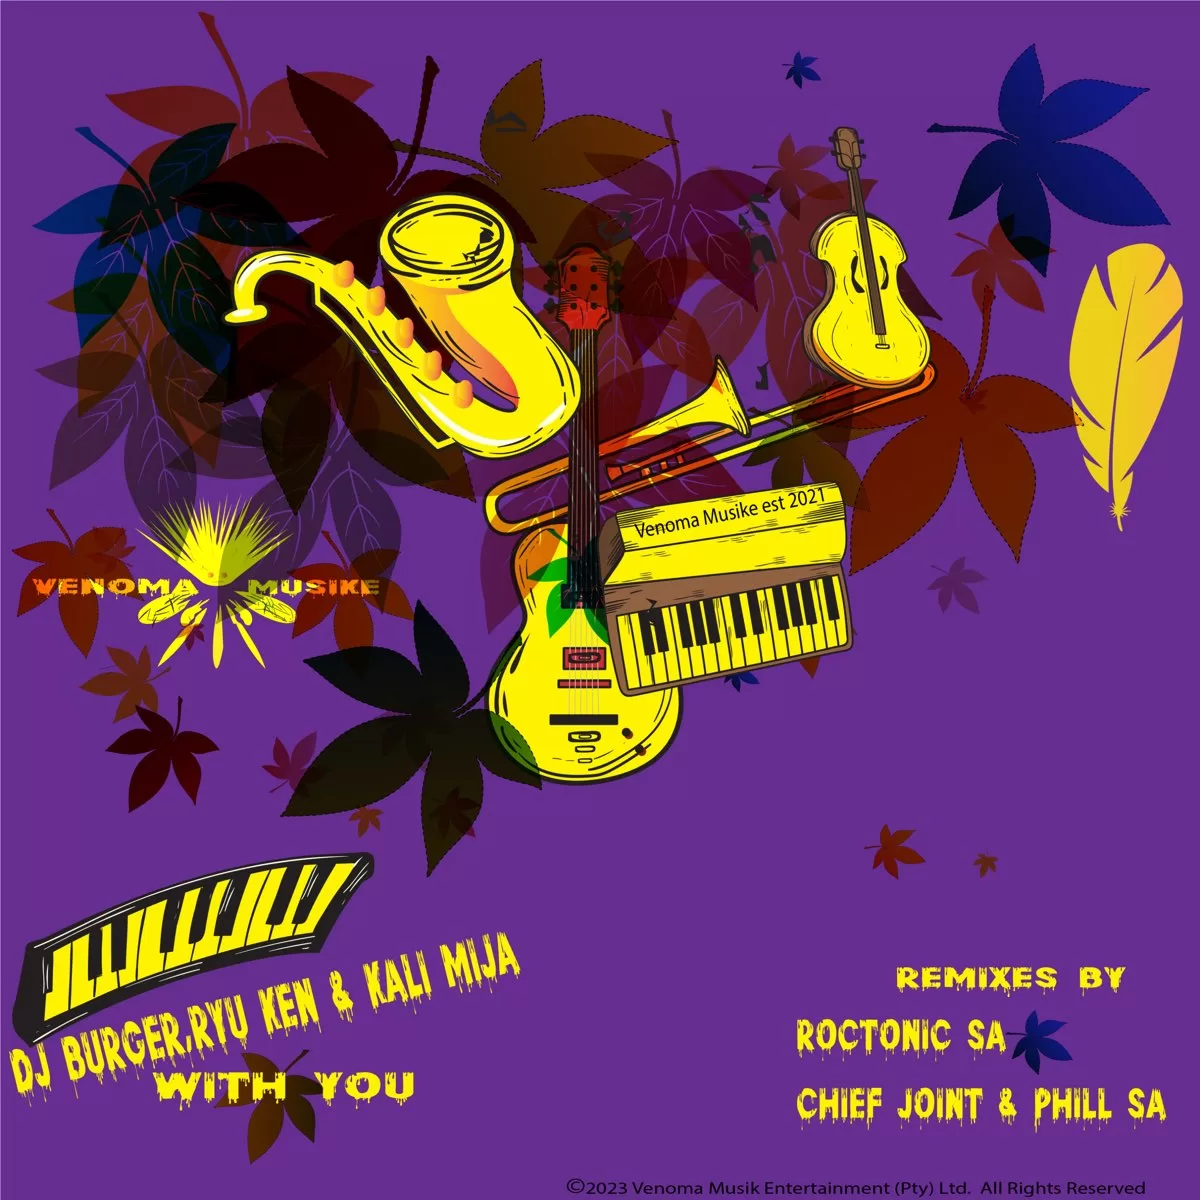 DJ Burger, Ryu Ken & Kali Mija – With You (Roctonic SA Remix)